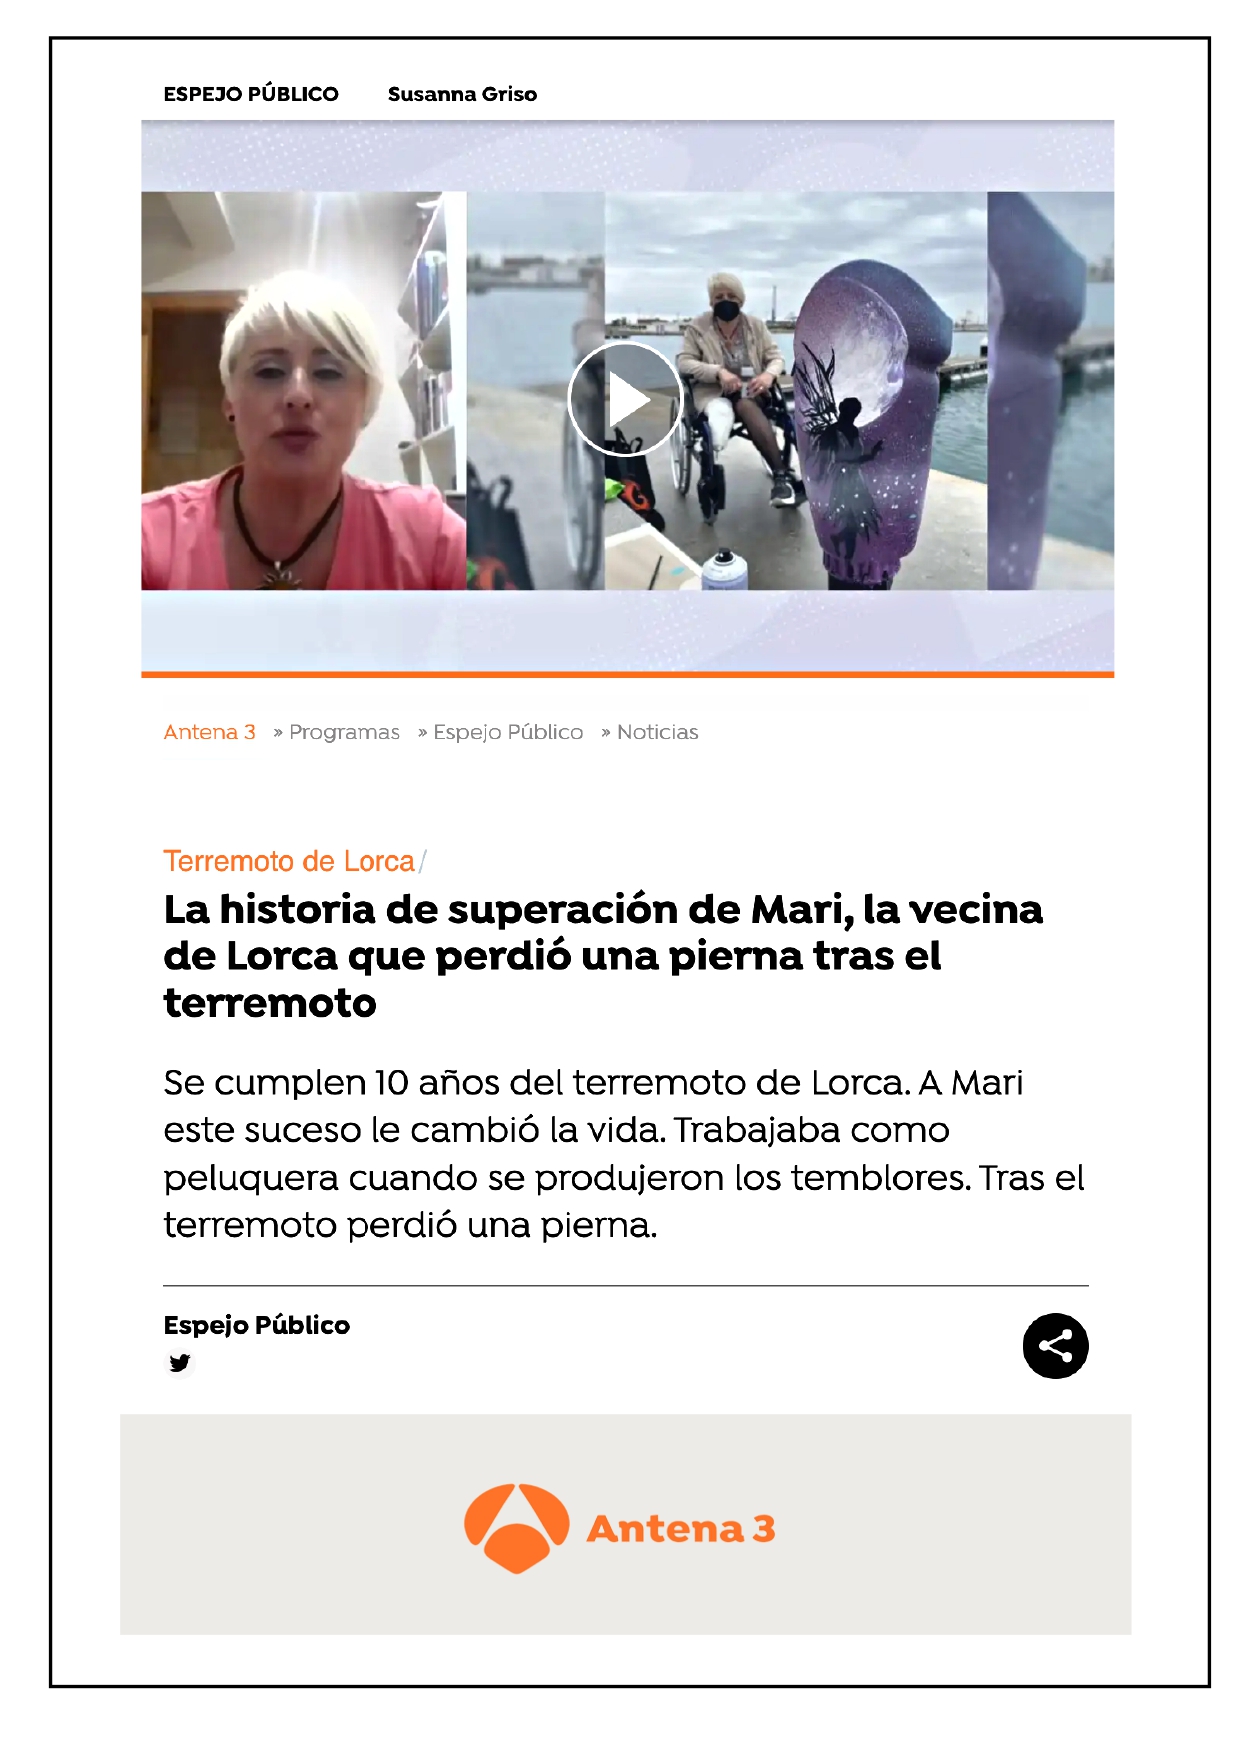 La historia de superación de Mari: La vecina de Lorca que perdió una pierna tras el terremoto